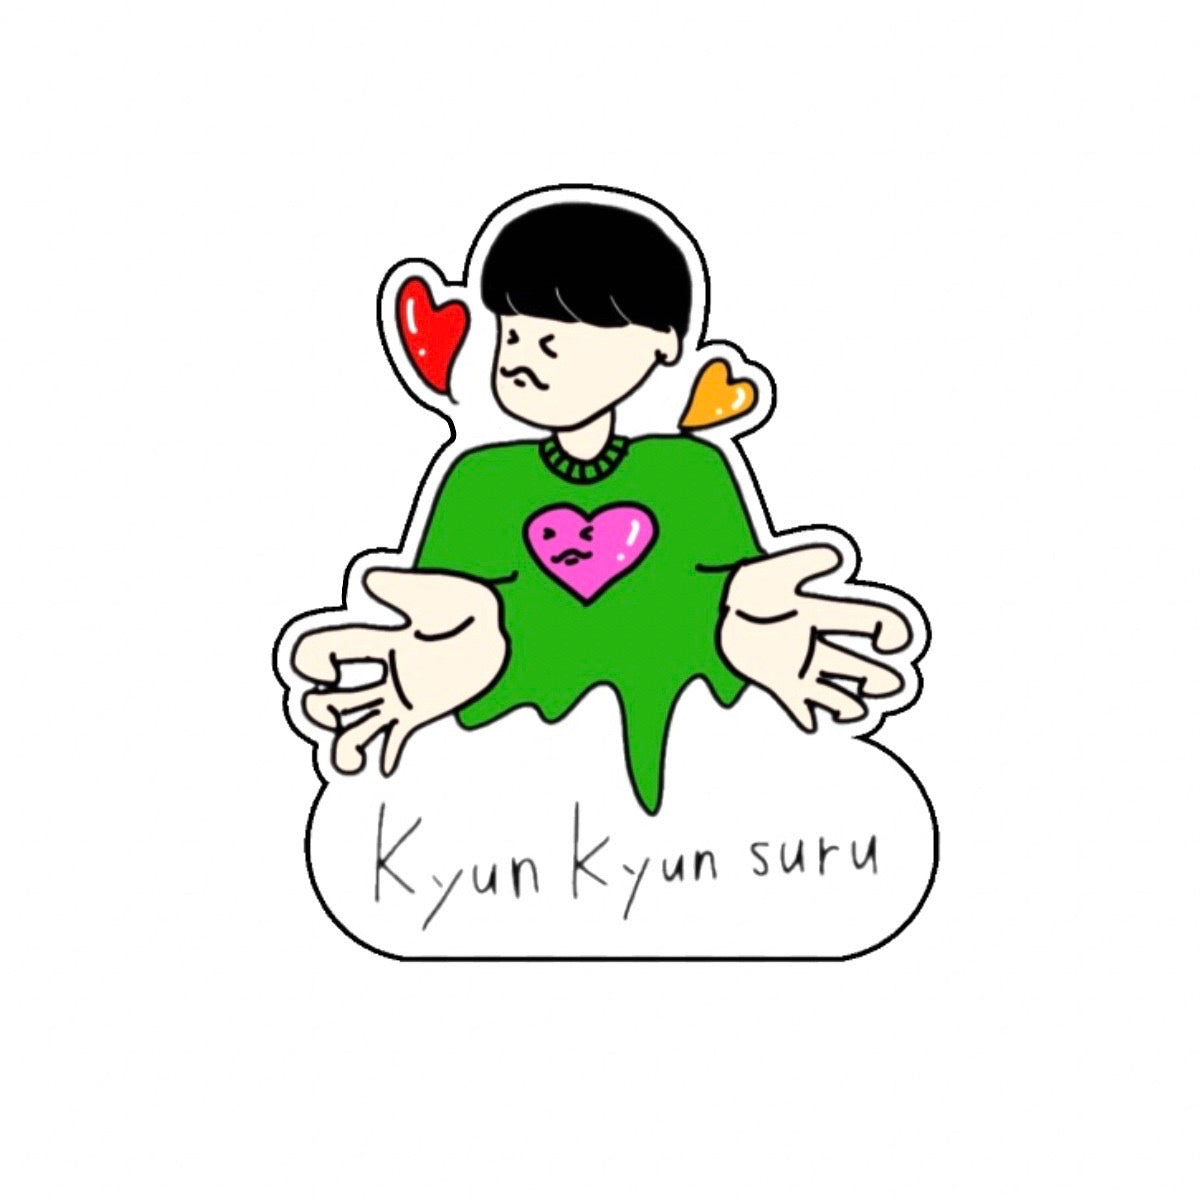 Kyun Kyun suru ステッカー